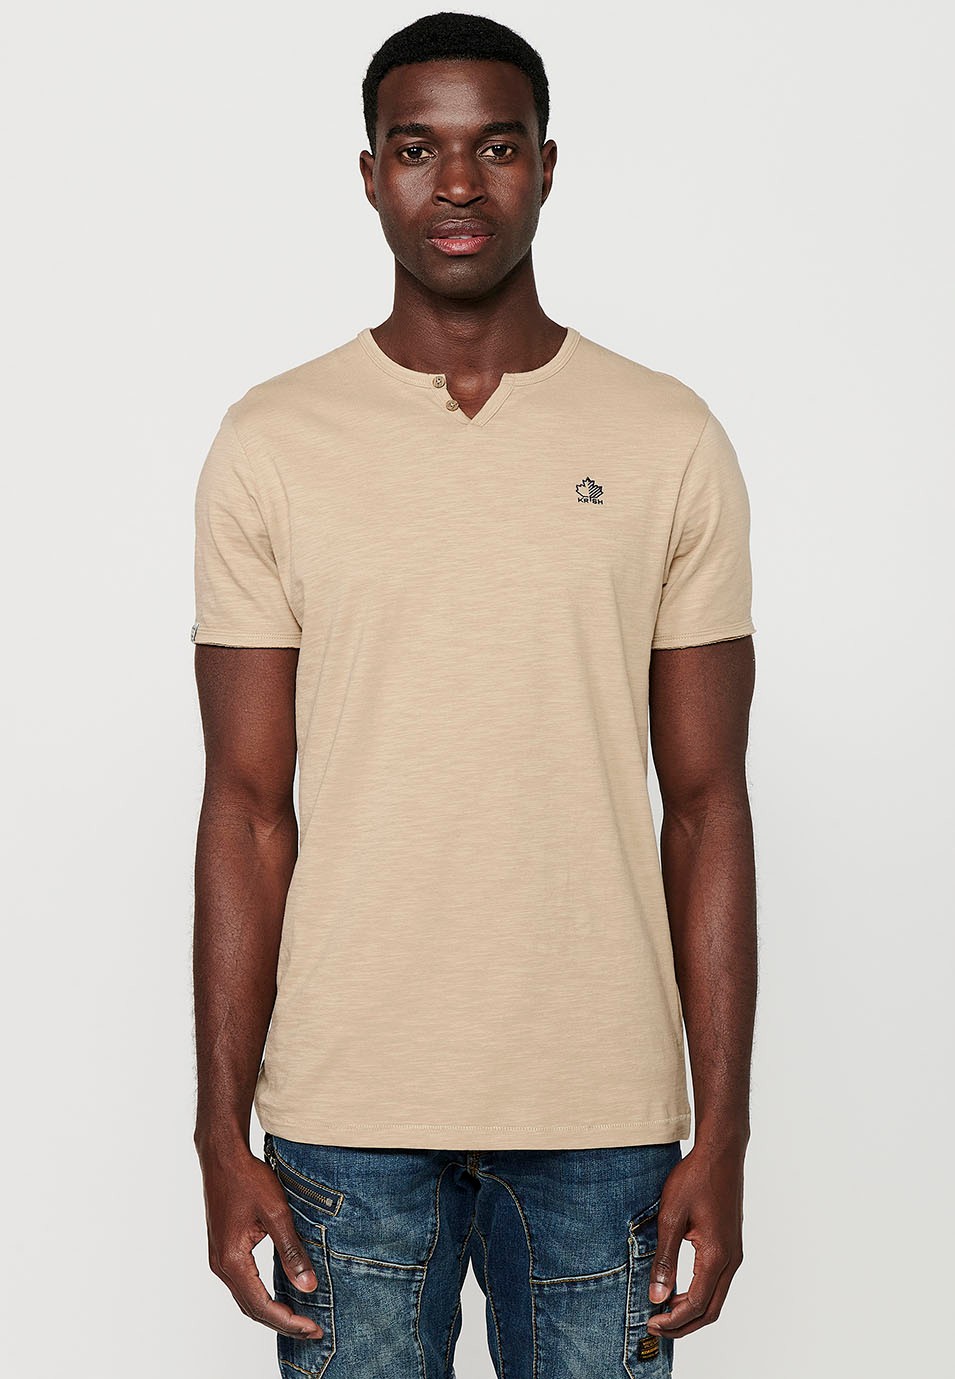 Camiseta básica de manga corta, cuello V con boton, color beige para hombre